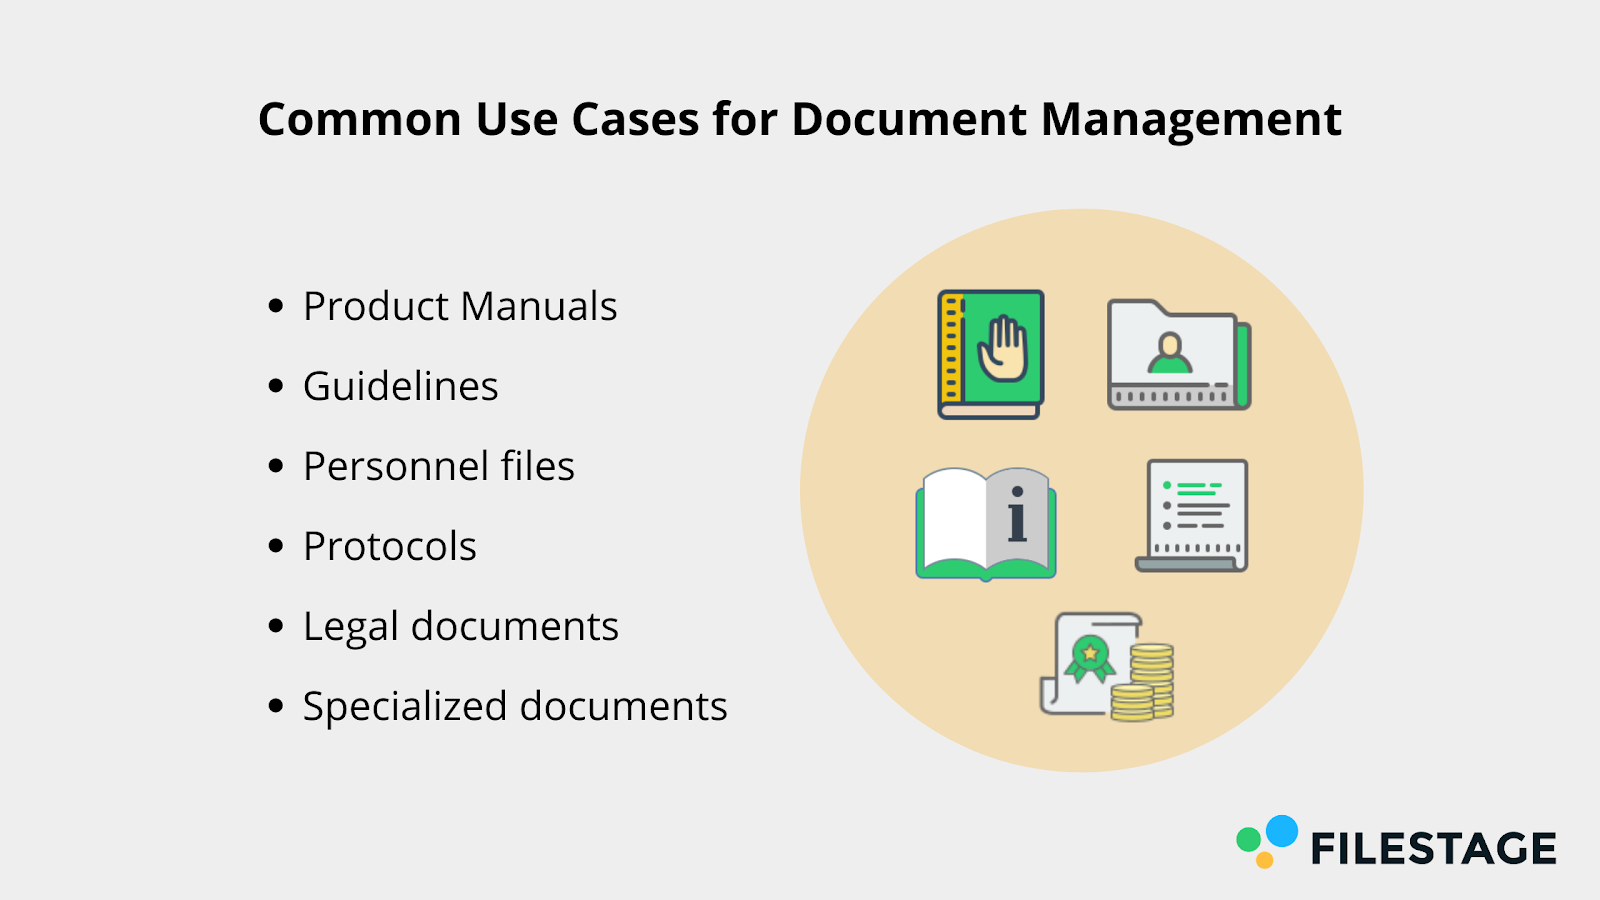 cas d'utilisation courants de la gestion des documents